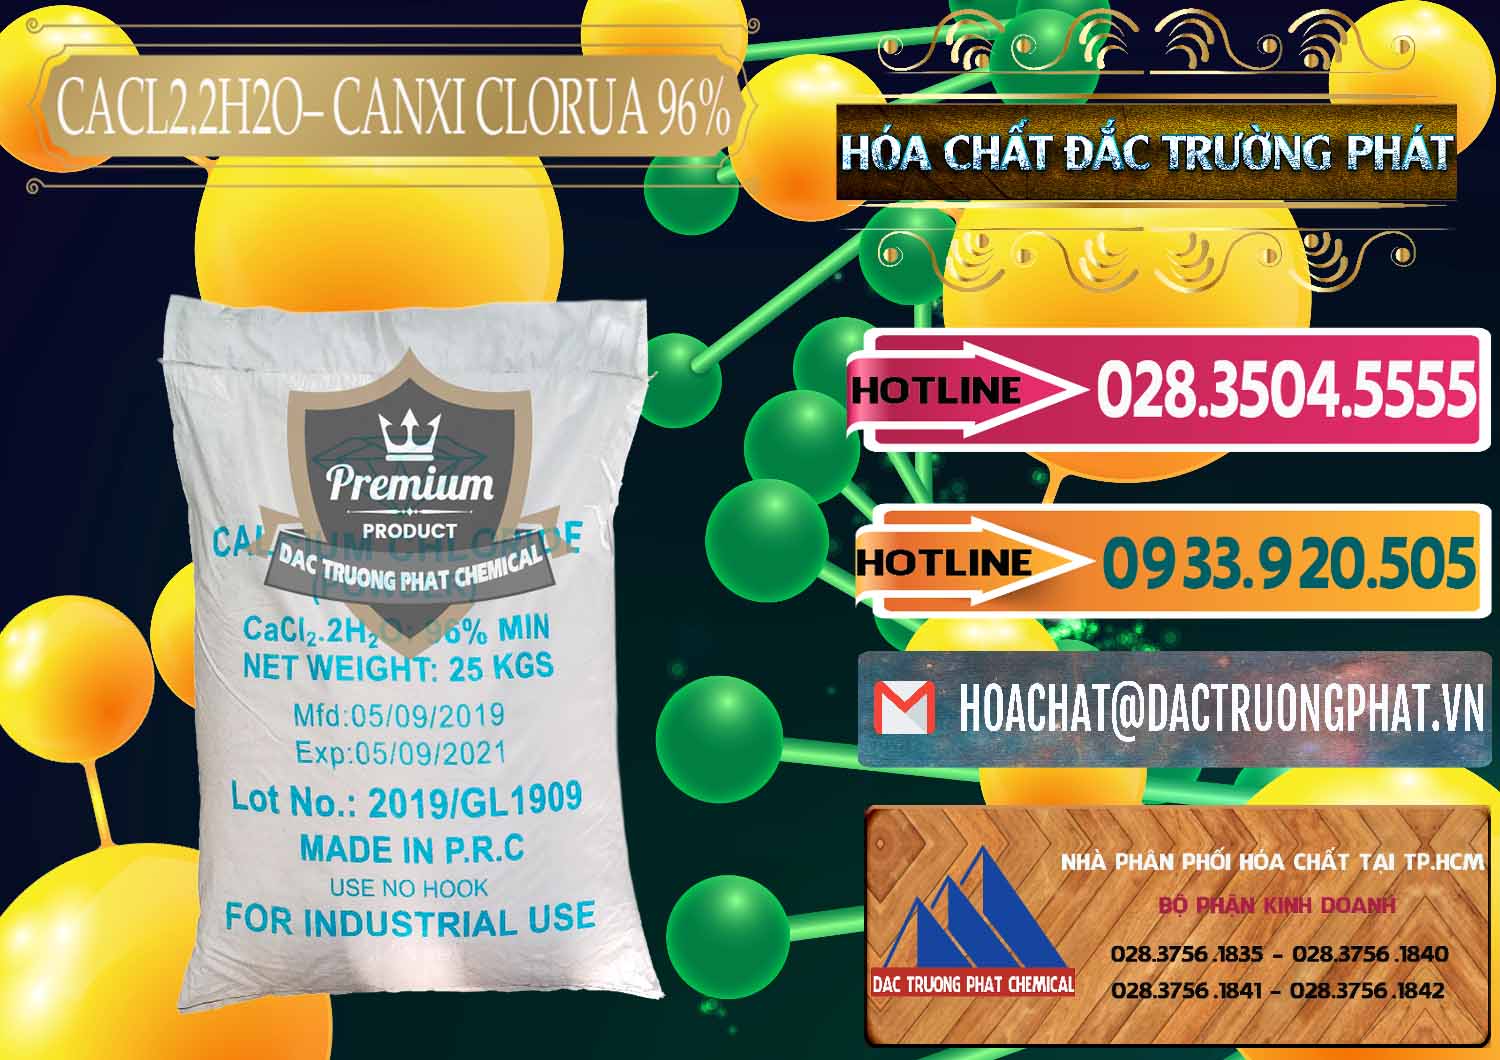 Cty bán và phân phối CaCl2 – Canxi Clorua 96% Logo Kim Cương Trung Quốc China - 0040 - Cung ứng ( phân phối ) hóa chất tại TP.HCM - dactruongphat.vn